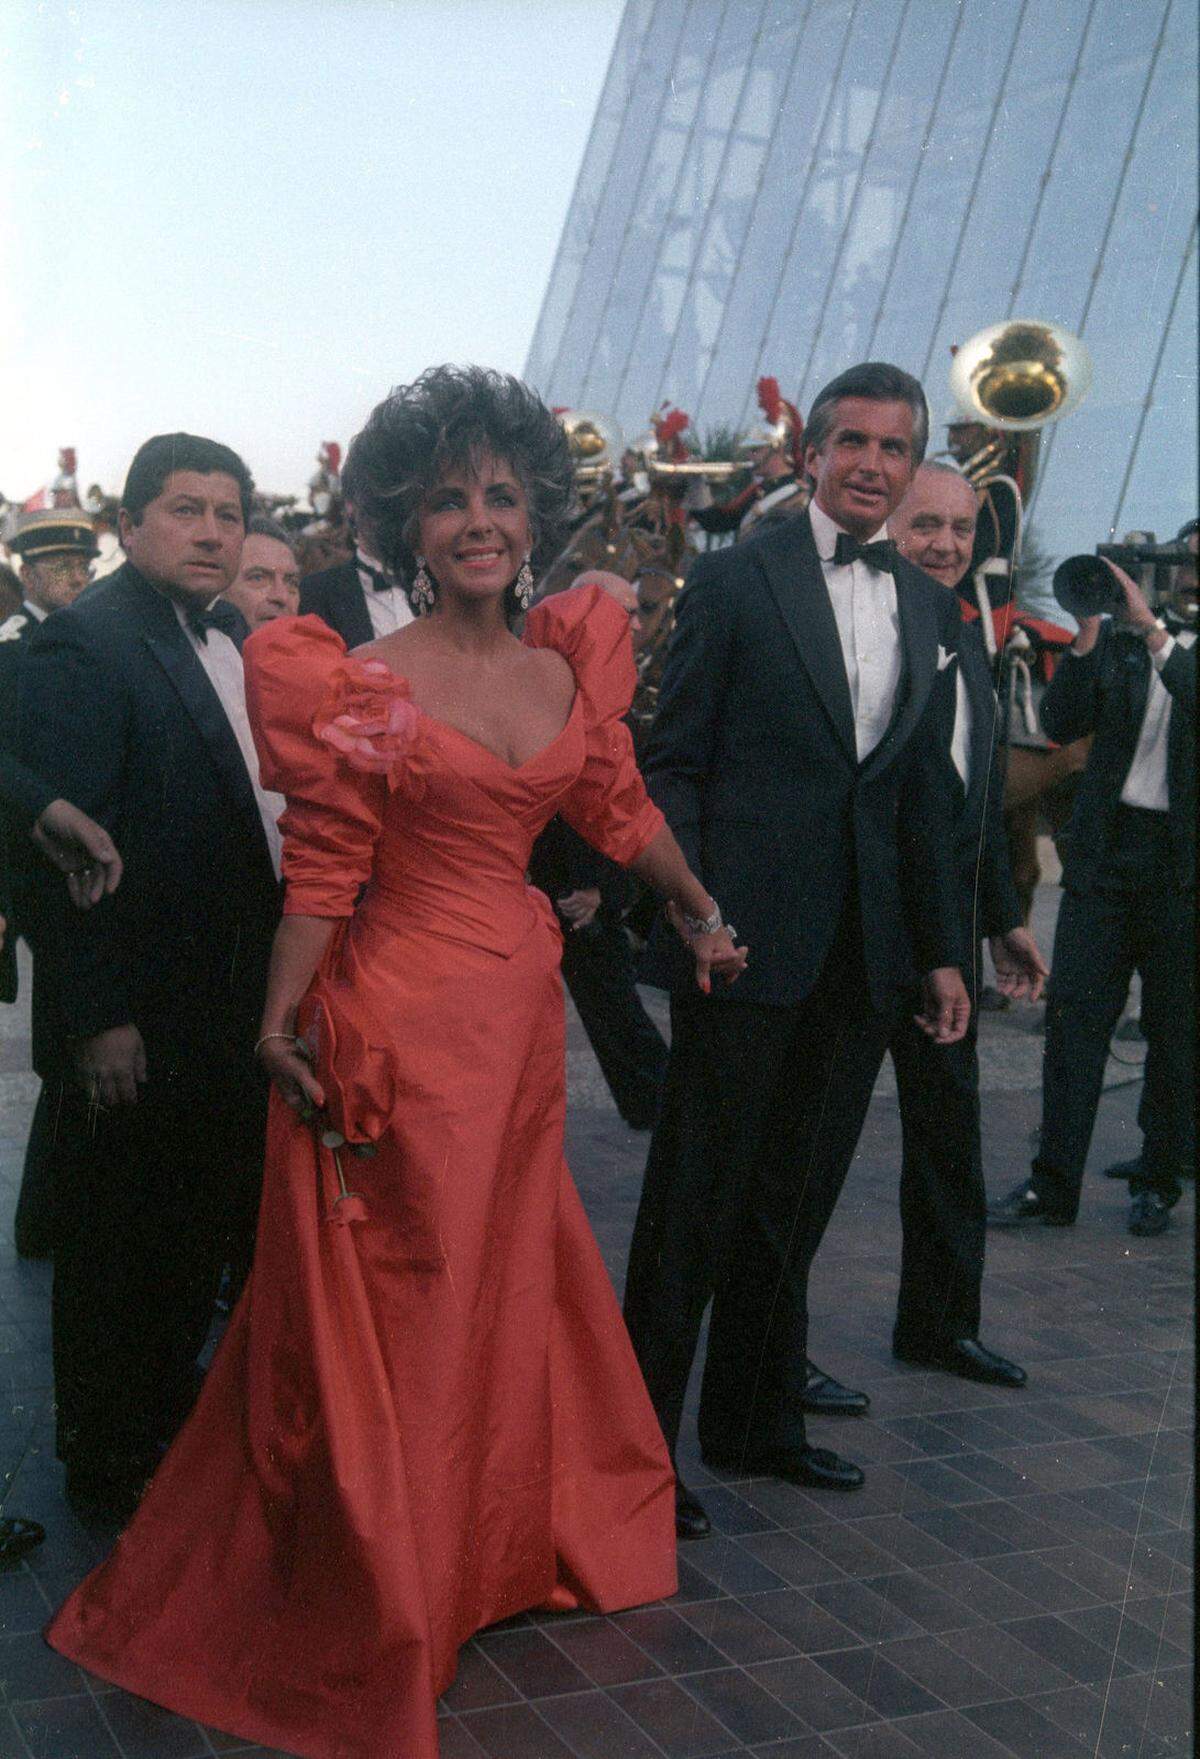 Unzählige Male war auch Filmdiva Elizabeth Taylor in Cannes zugegen. Hier braun gebrannt in einer roten Robe an der Seite von Schauspieler George Hamilton 1987.